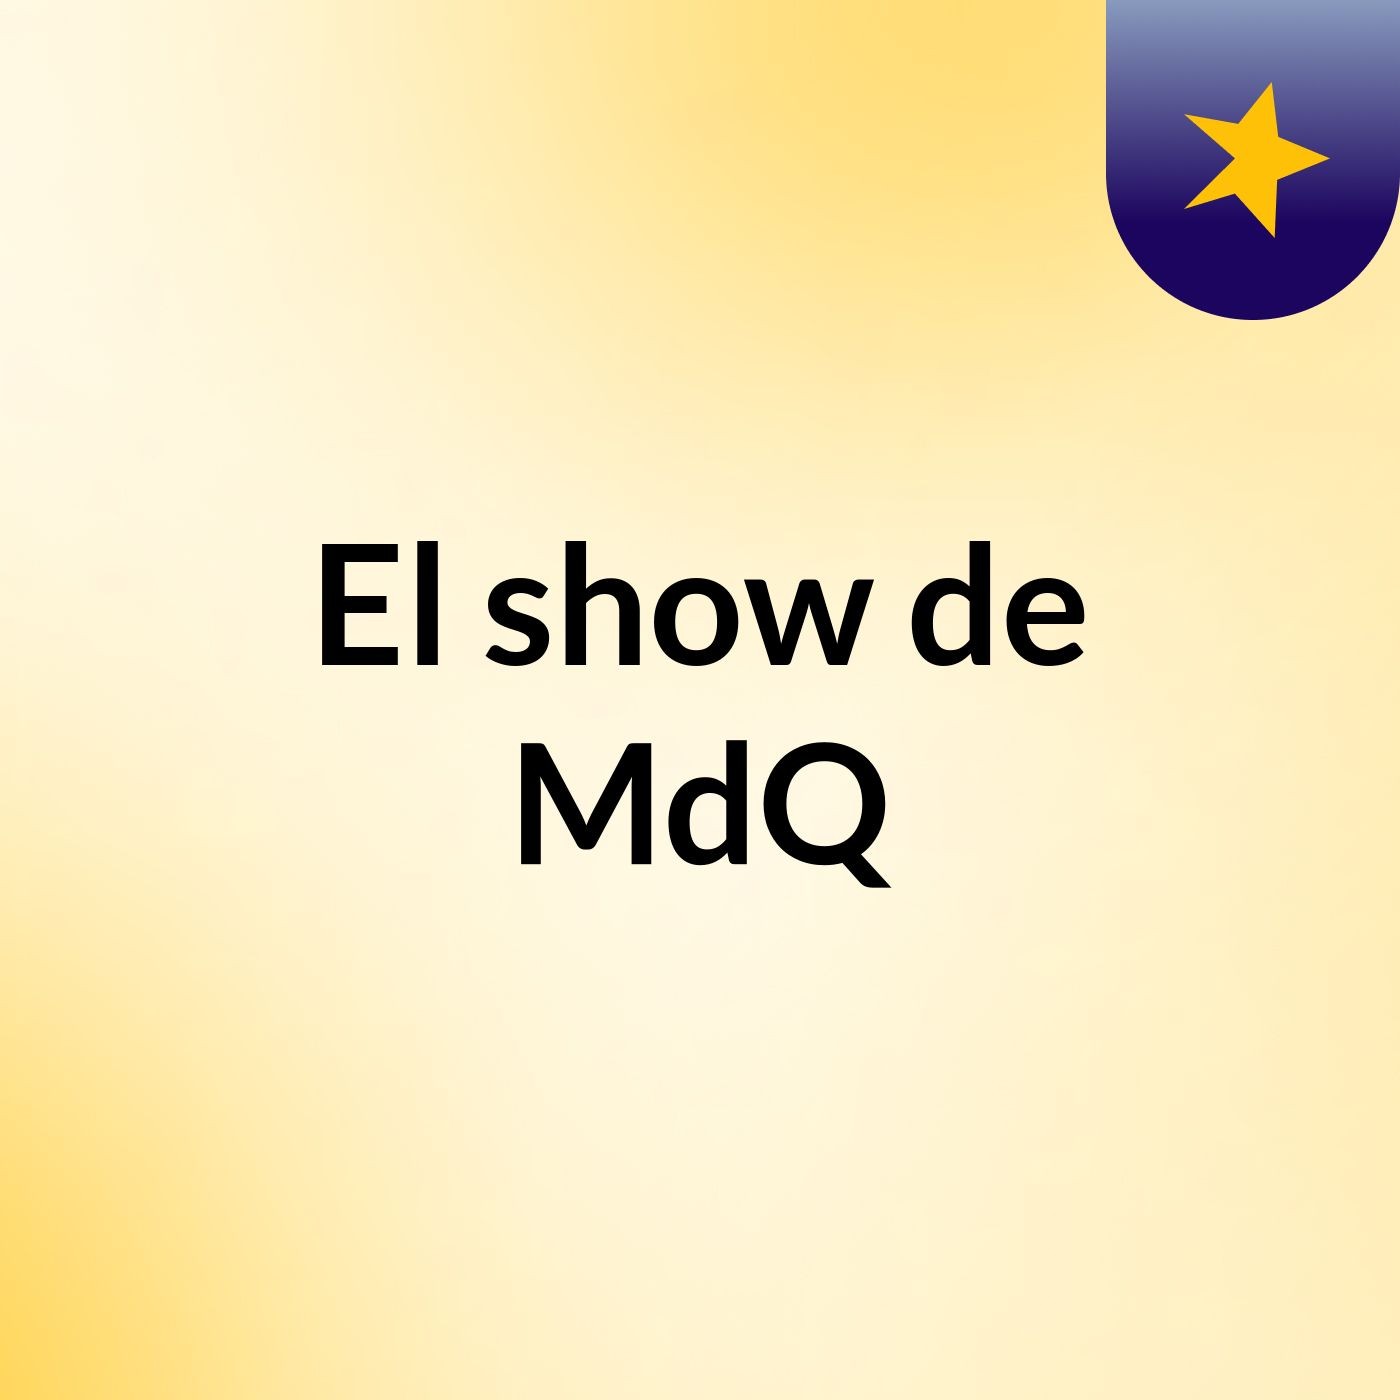 El show de MdQ